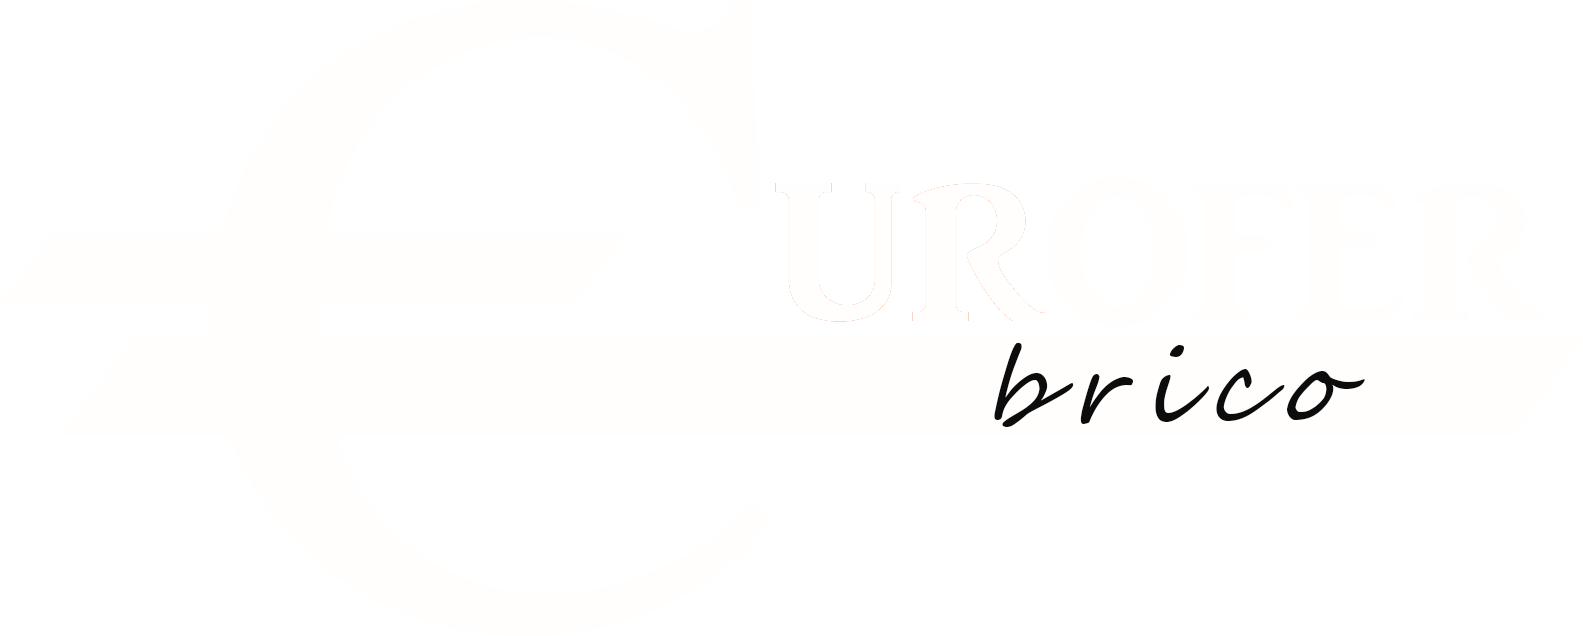 Eurofer